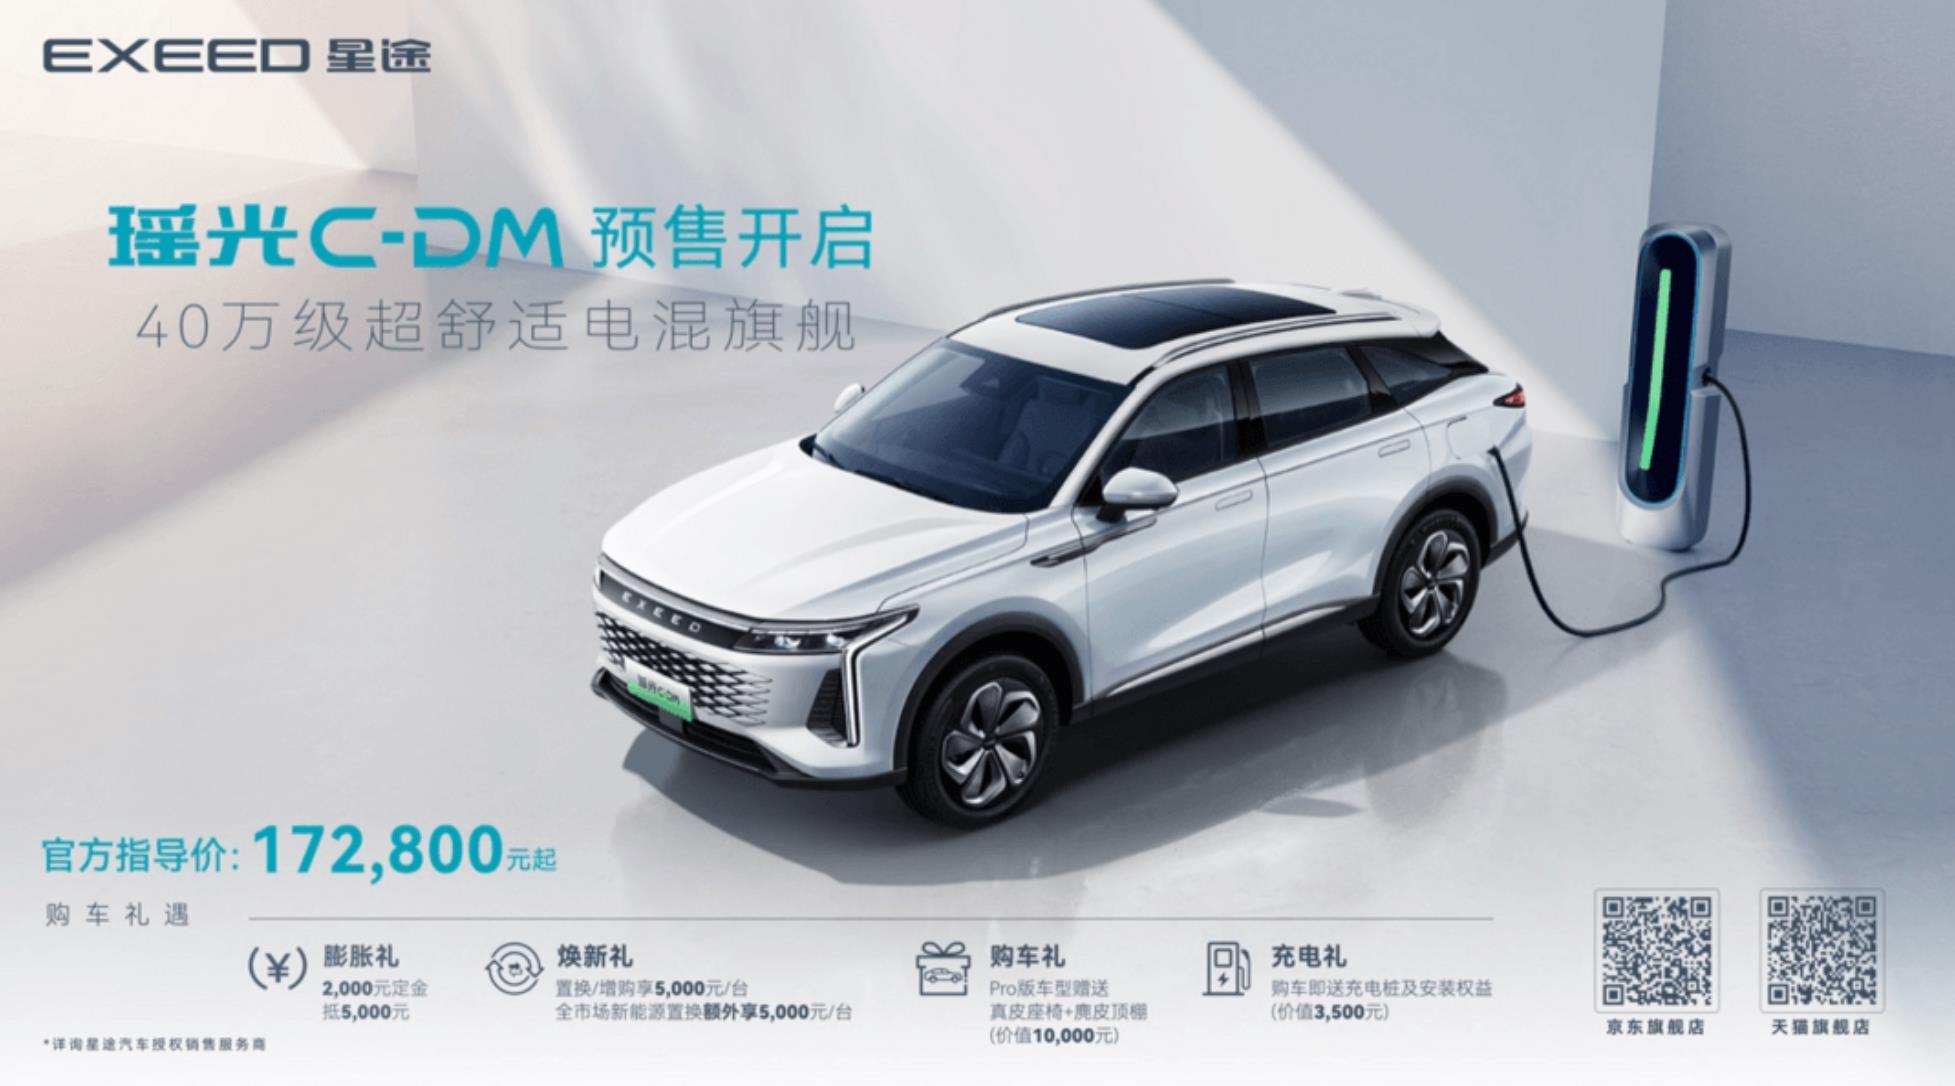 超舒适电混旗舰SUV星途瑶光C-DM开启预售，预售价17.28万元起